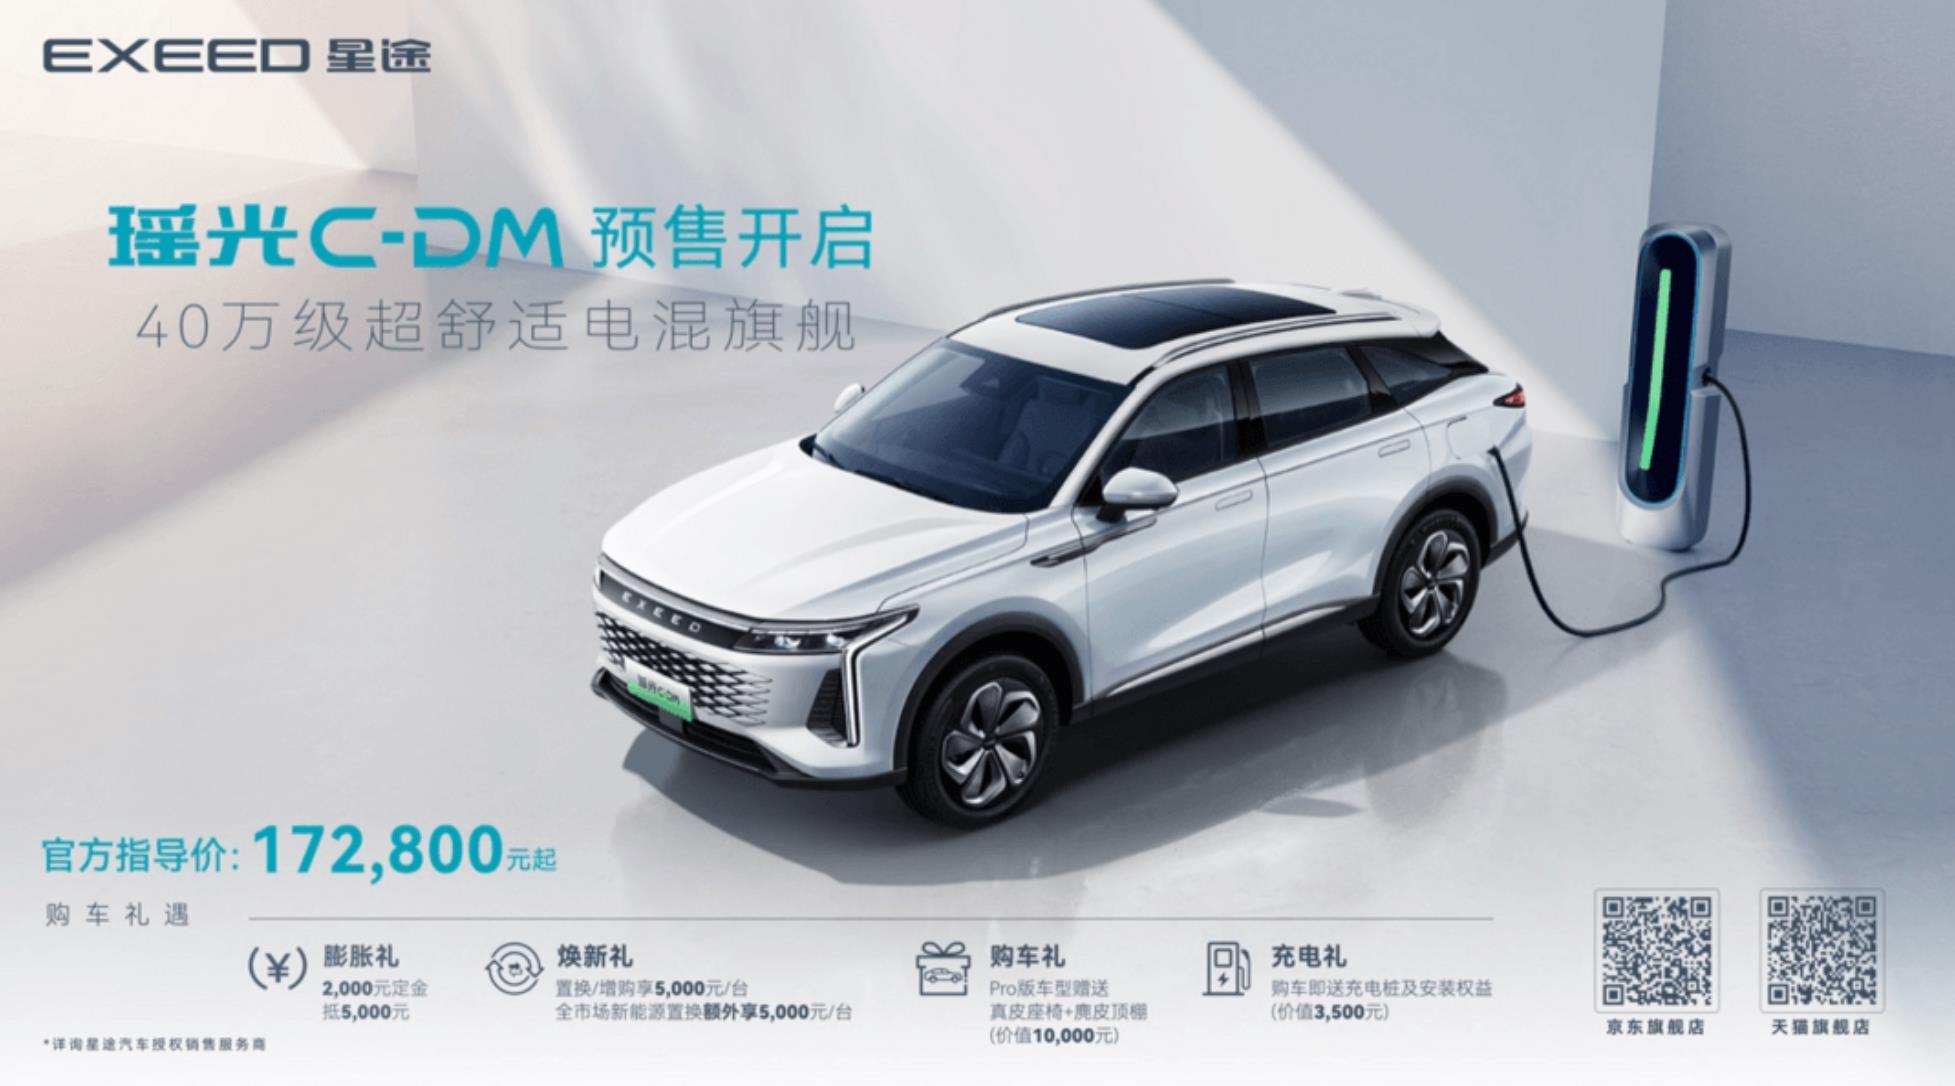 超舒适电混旗舰SUV星途瑶光C-DM开启预售，预售价17.28万元起